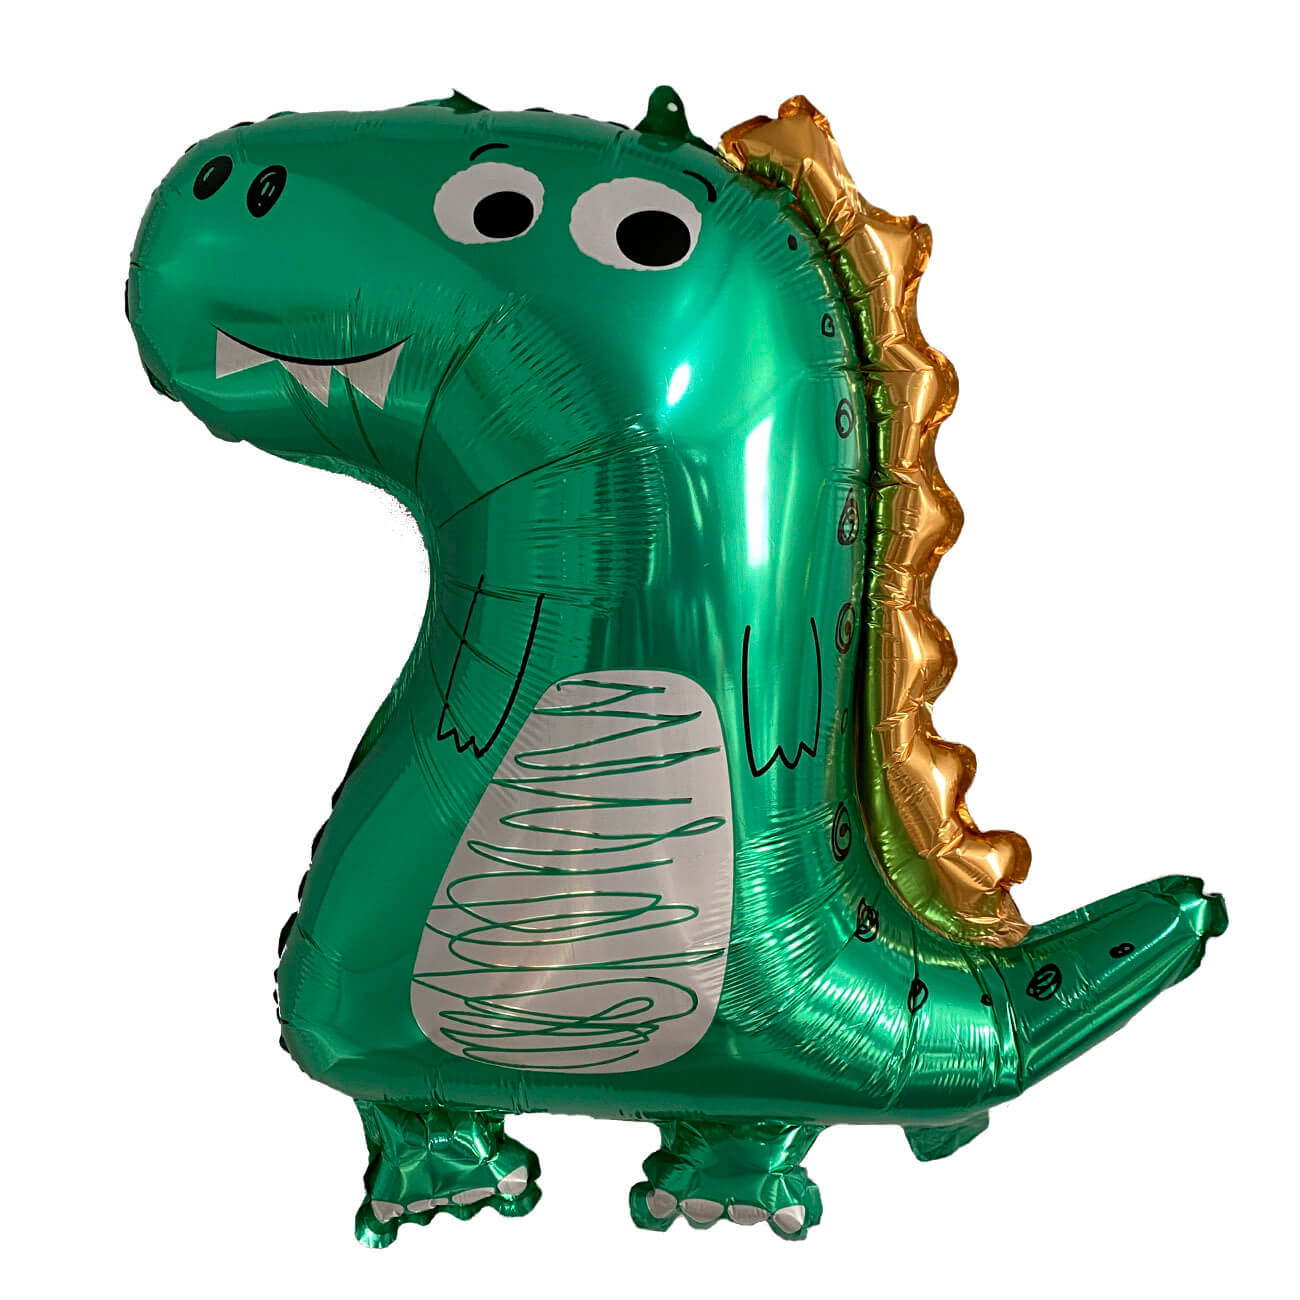 Шар воздушный, 70х59 см, фольга, зеленый, Динозавр, Dino шар воздушный